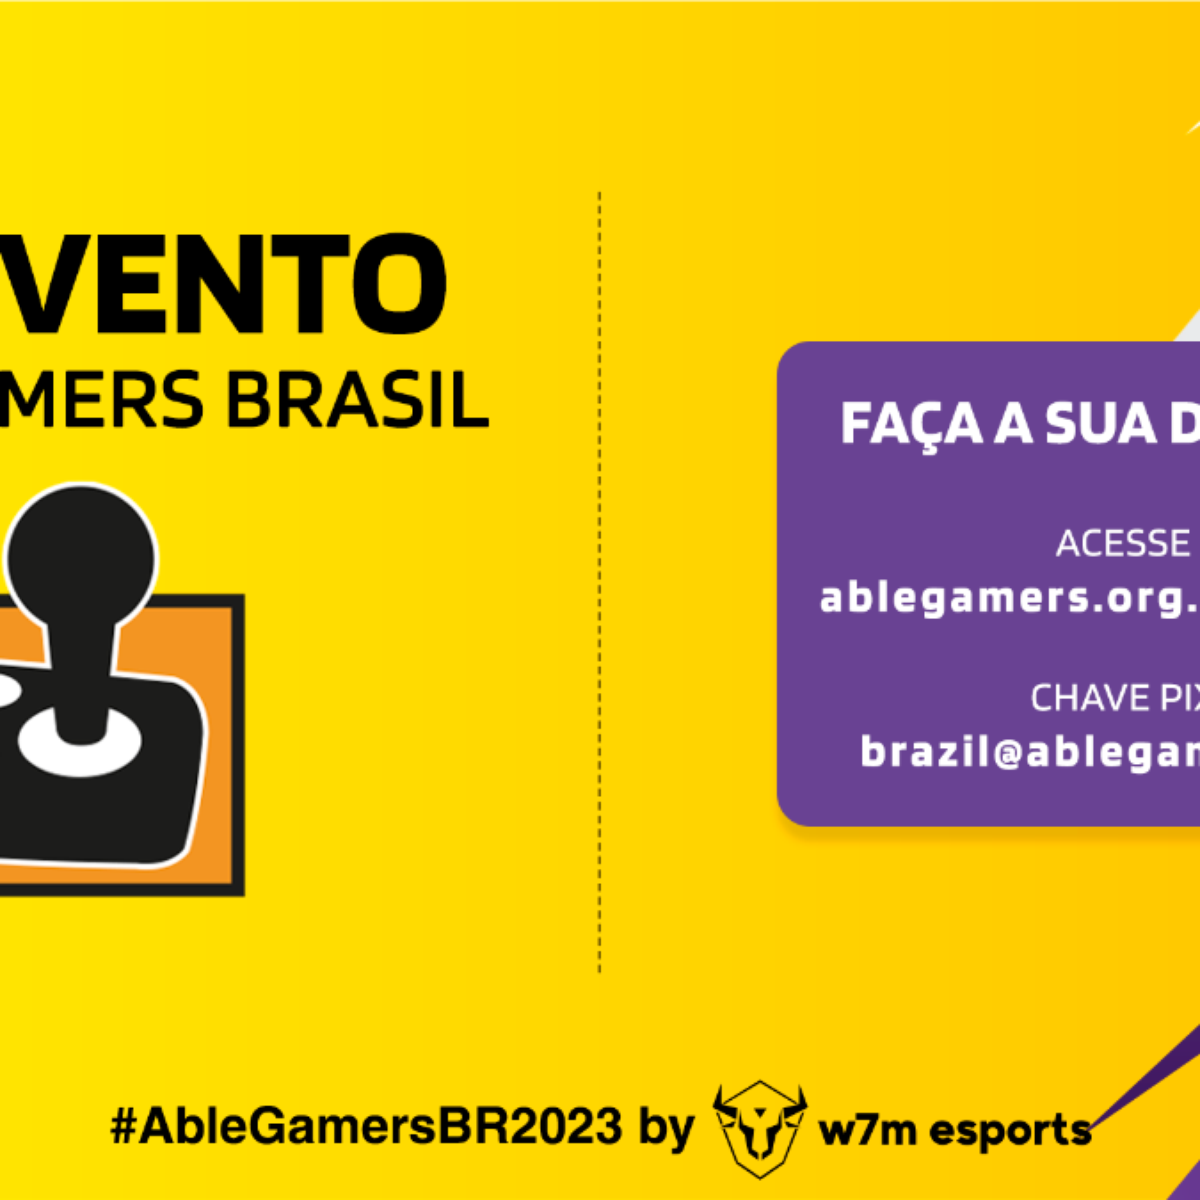 Games: conheça as principais empresas de jogos do Brasil - 23/07/2022 - Tec  - Folha